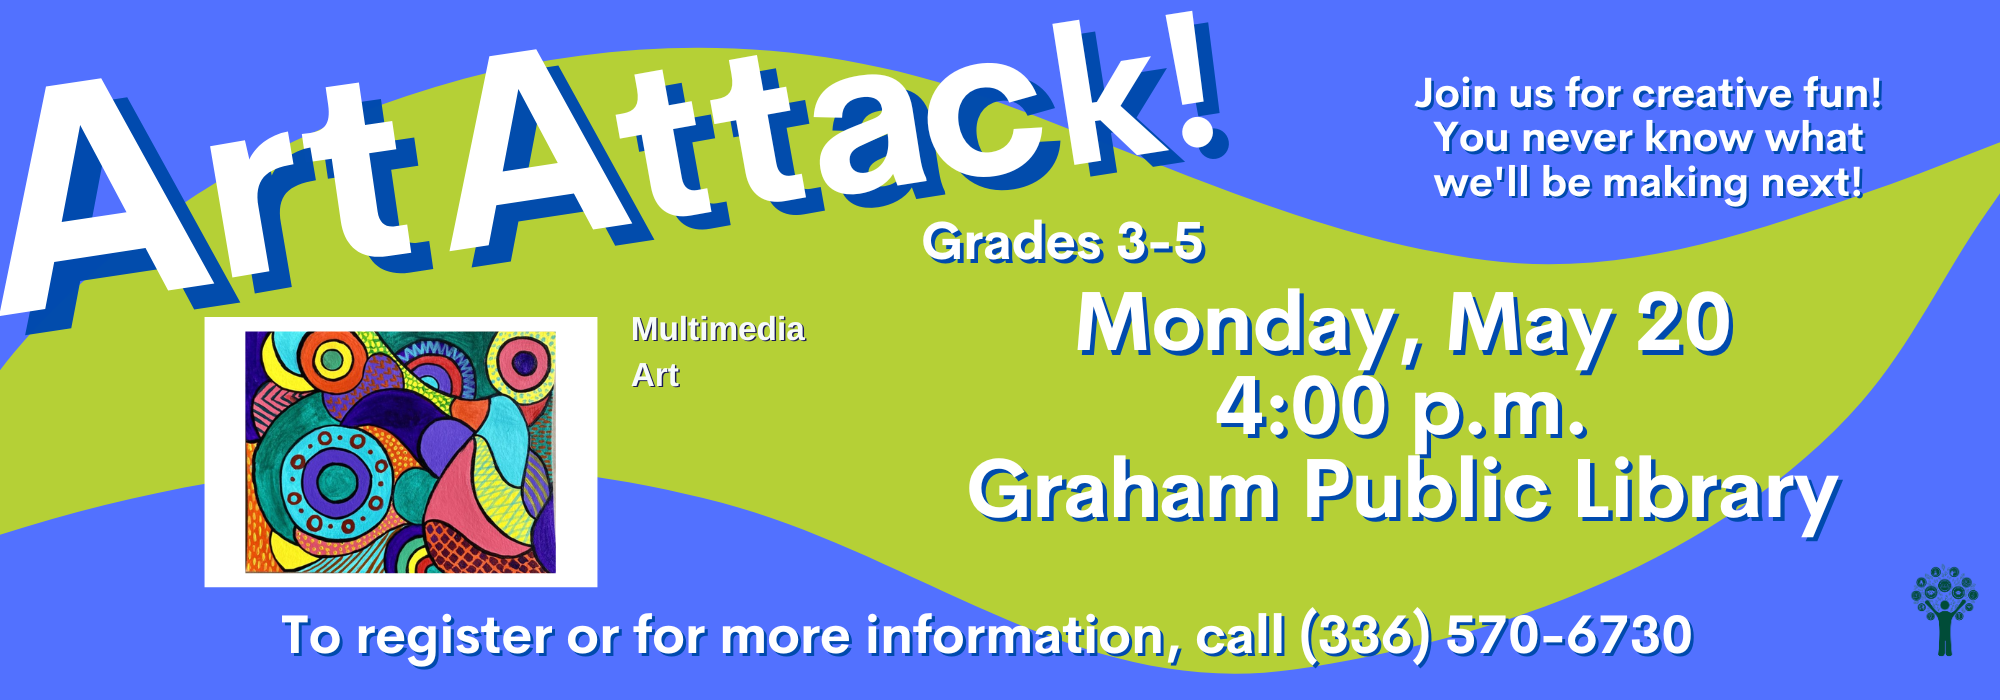 5.20 at 4 pm - Art Attack at Graham